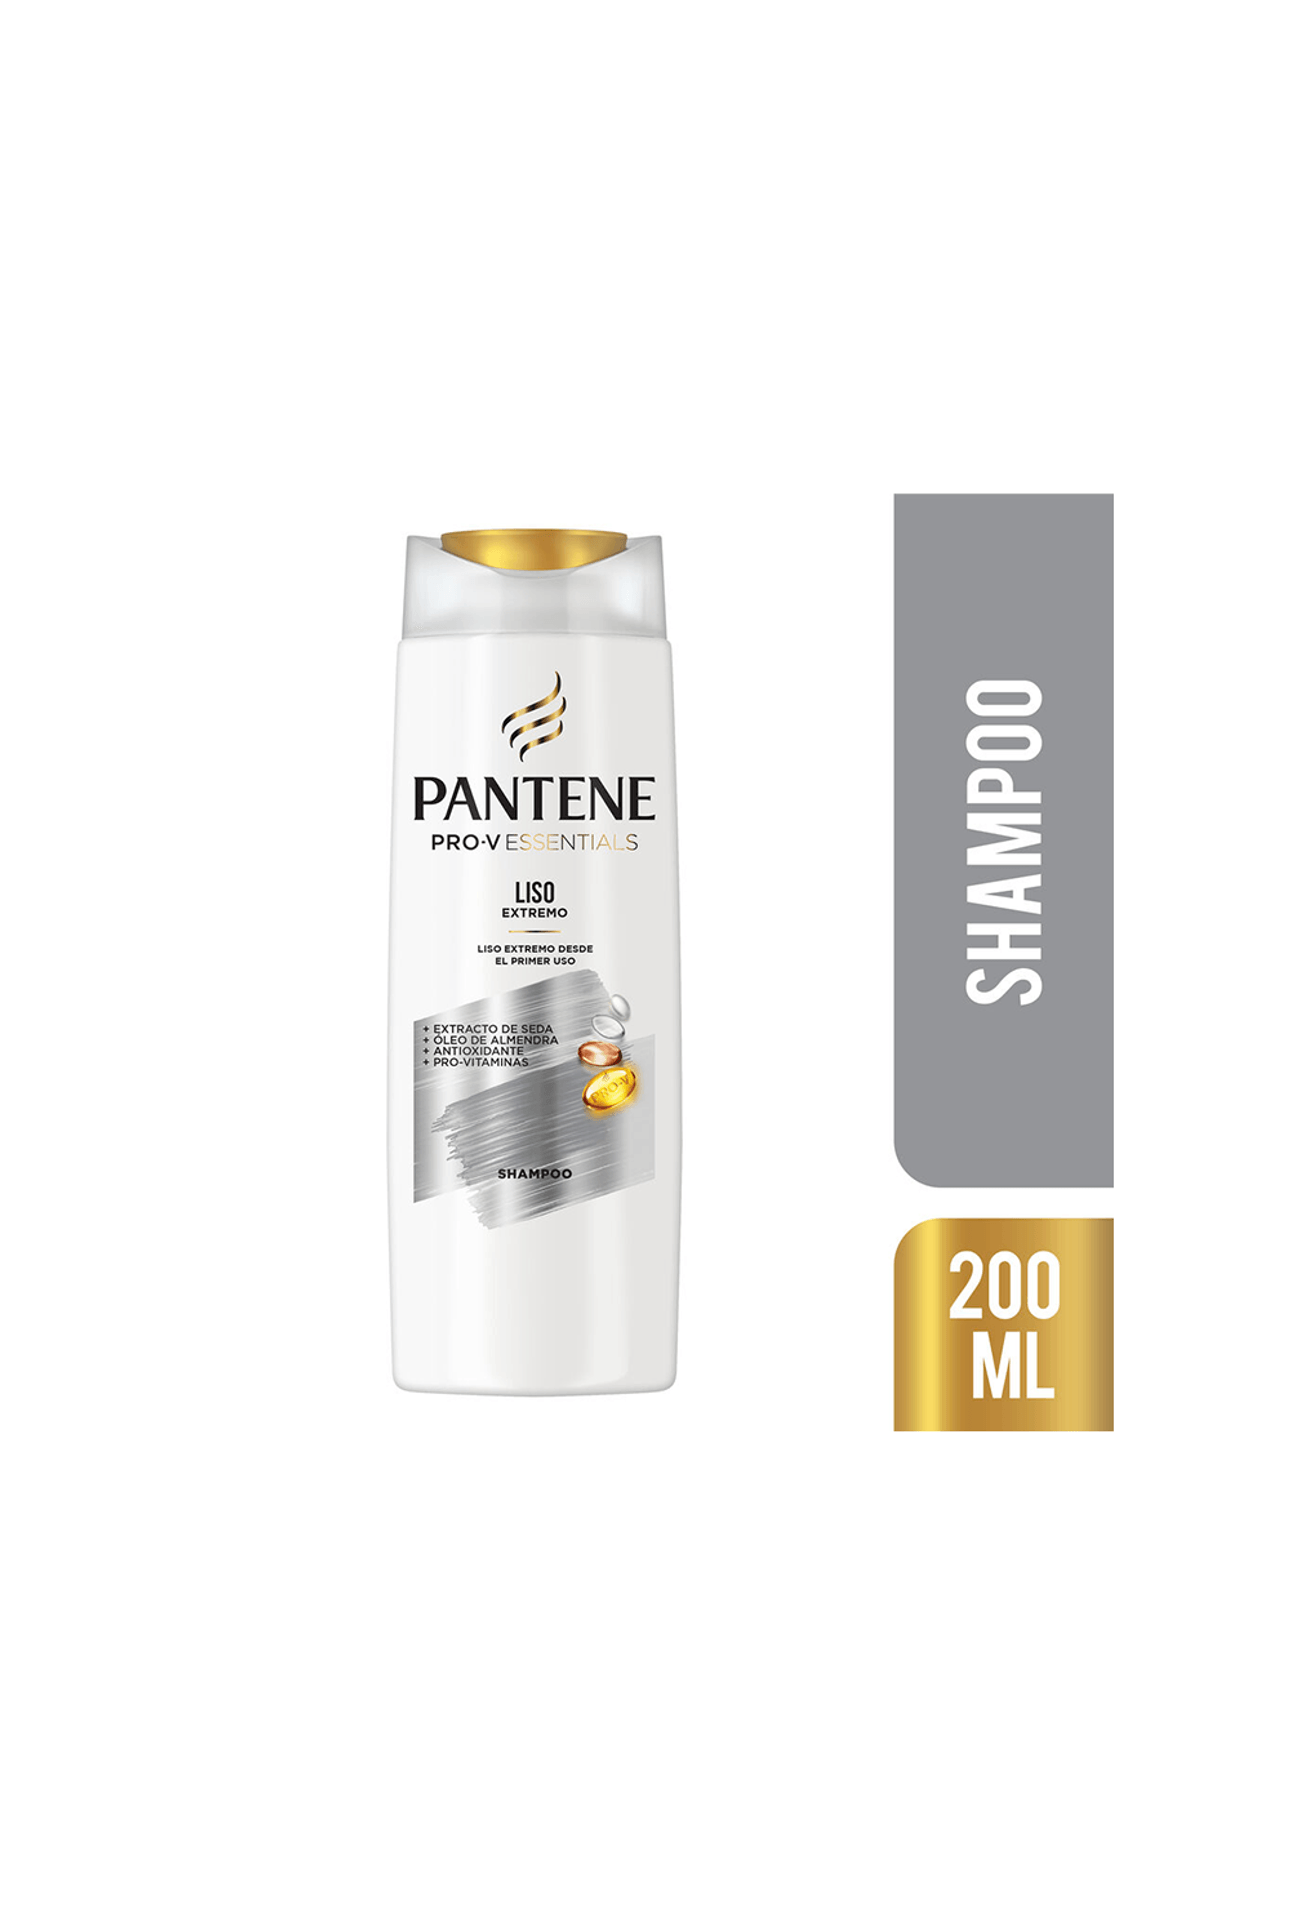 Pantene-Shampoo-Pantene-Liso-Extremo-x-200-ml-7500435168533_img1